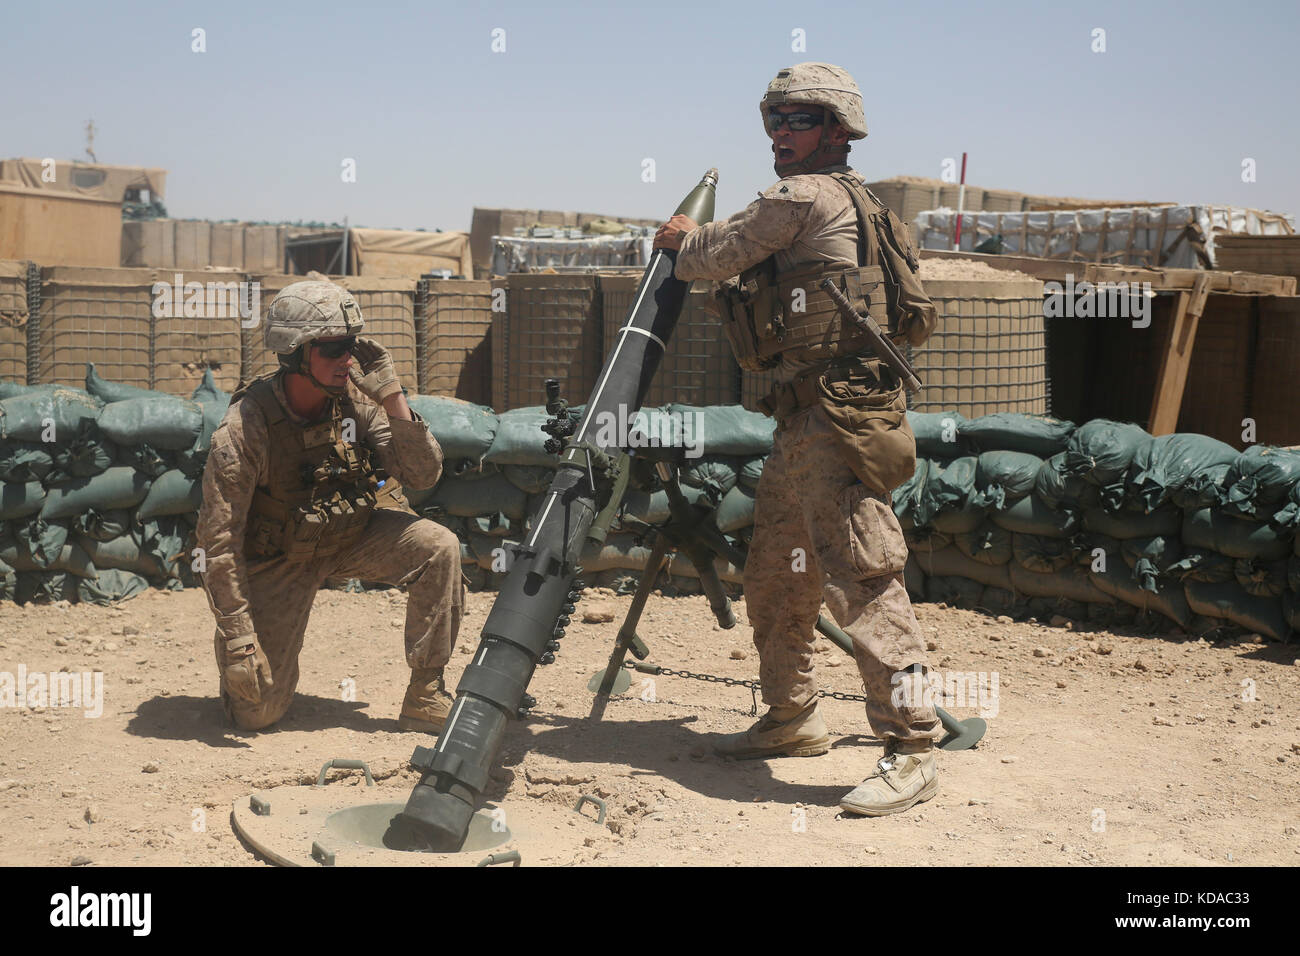 Us Marine Corps Soldaten einfügen Runden in einem 120 mm Mörser Waffe während einer Training Mission in Camp shorab Juni 23, 2017 in der Nähe von Lashkar Gah, Provinz Helmand, Afghanistan. Stockfoto